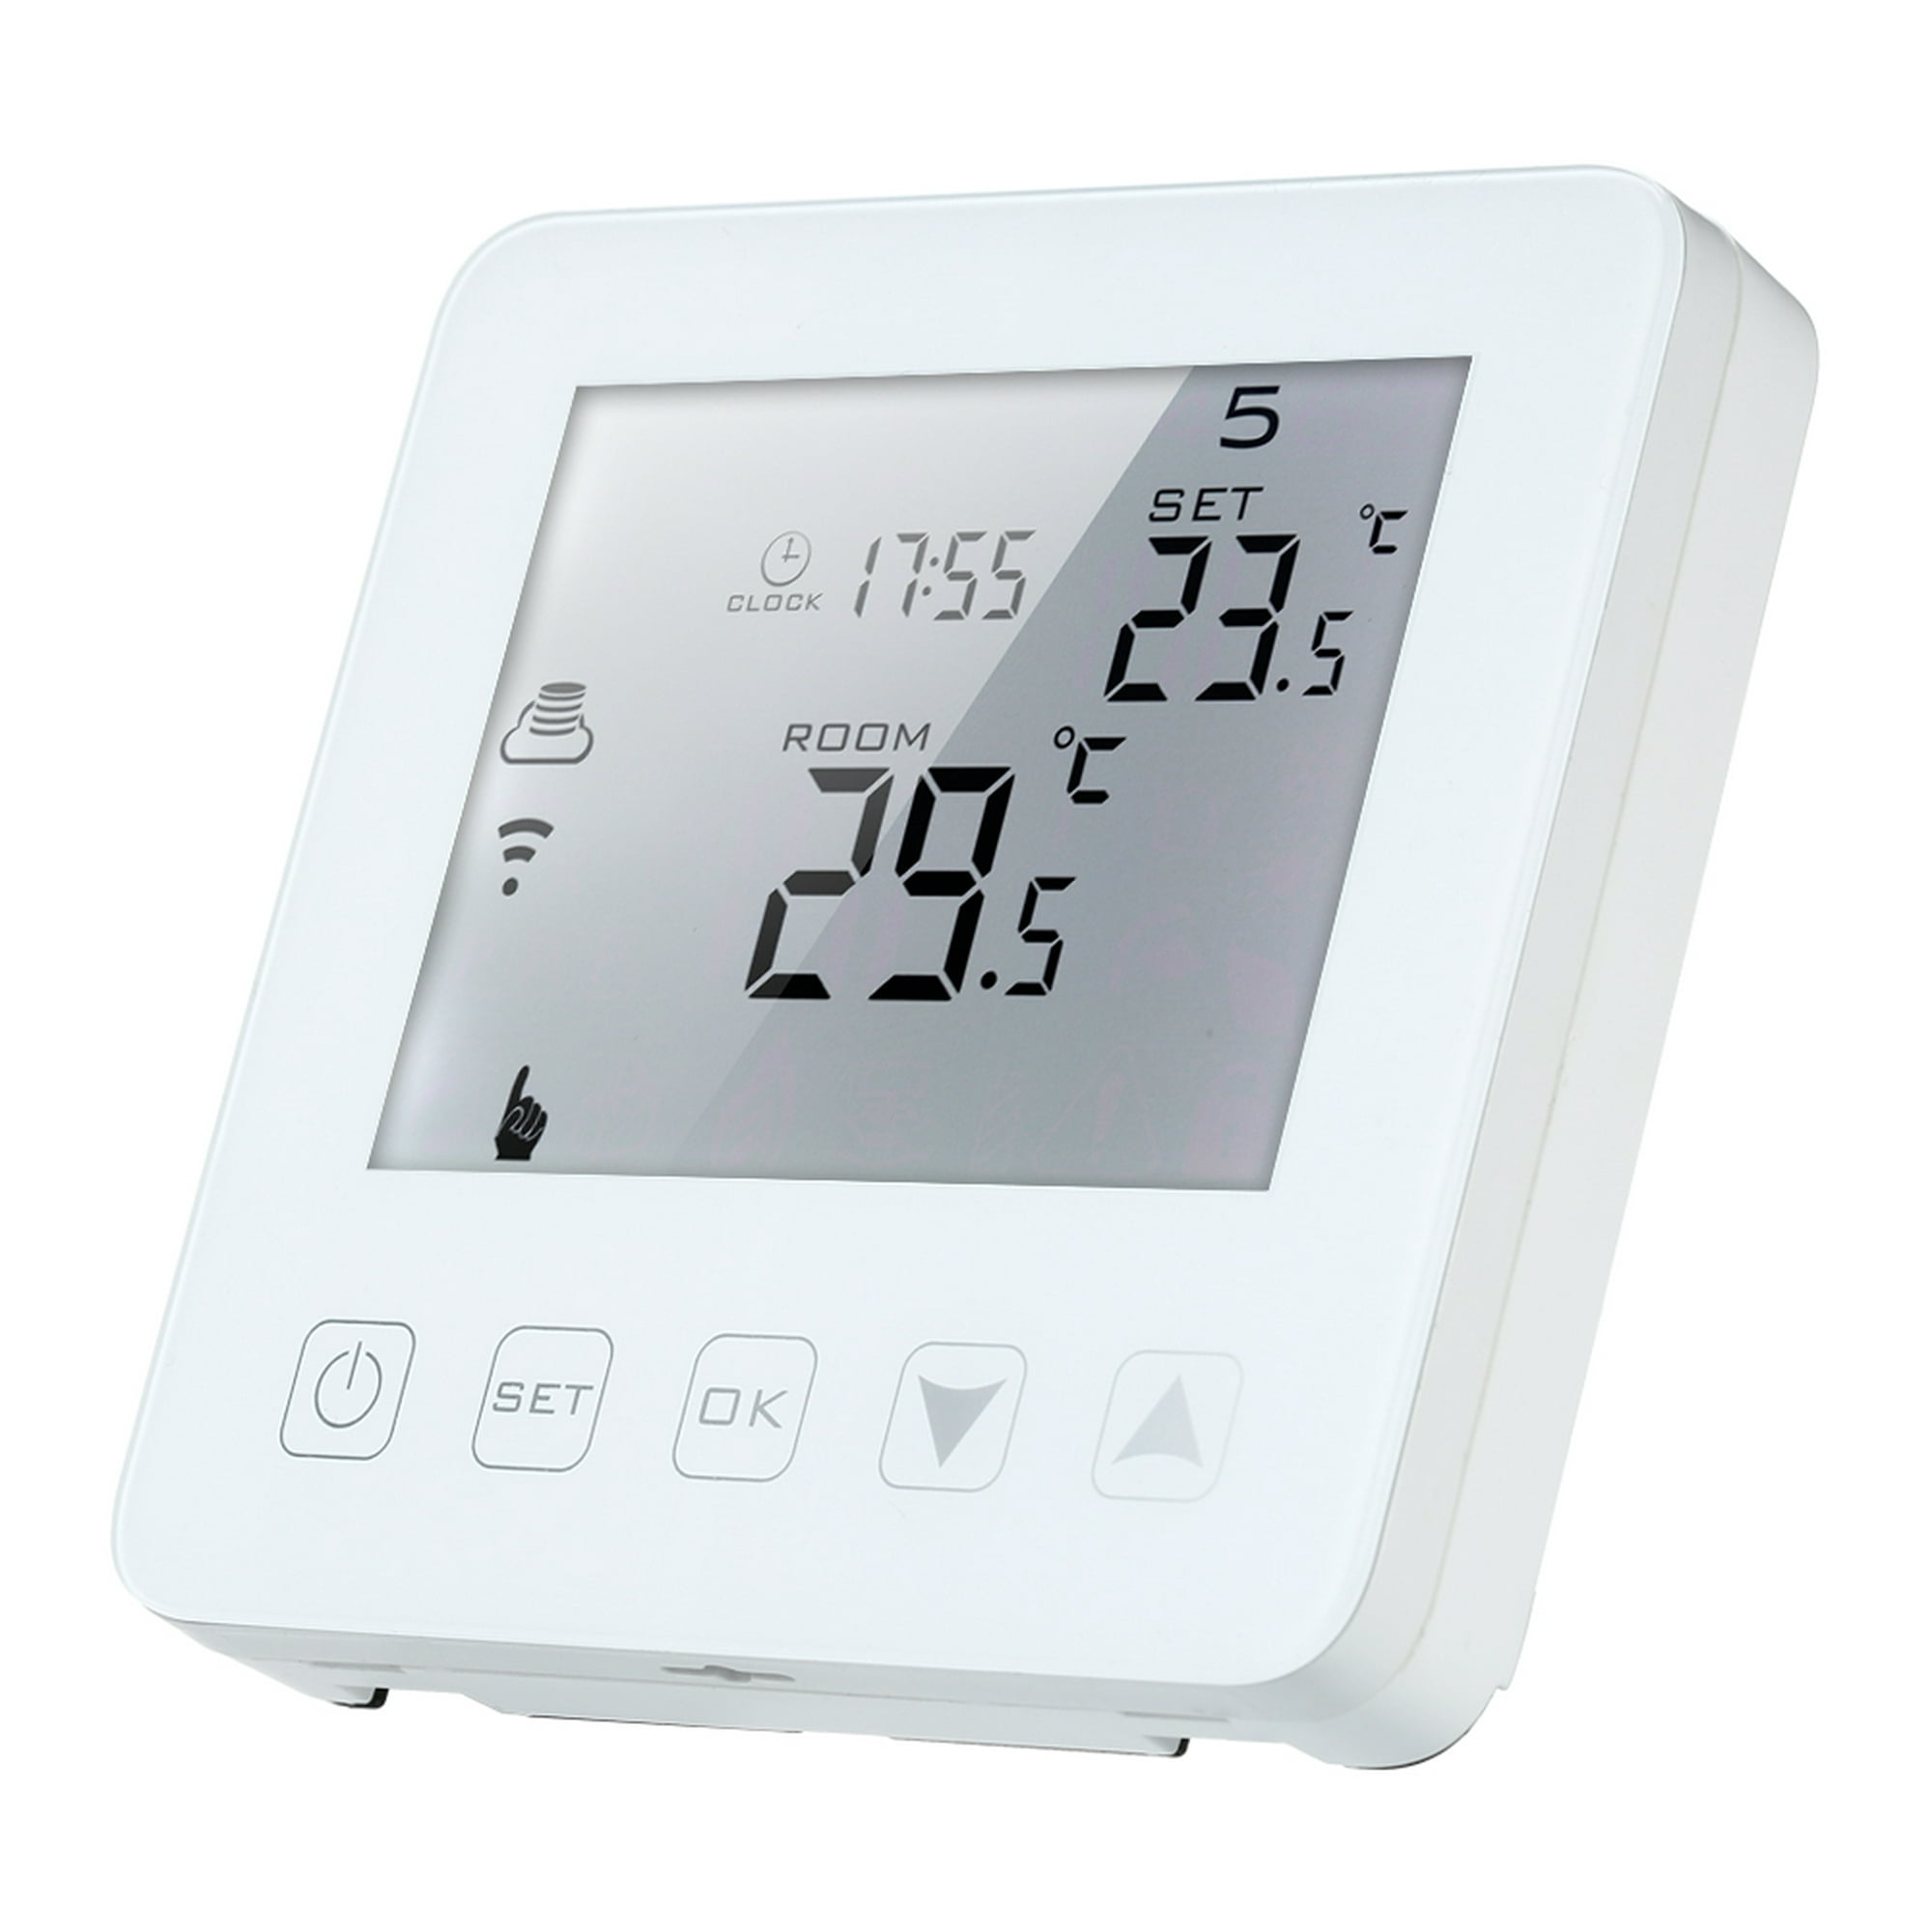 Termostato inteligente para la caldera de gas, Tellur, Wi-Fi, LCD de 3,7  pulgadas, Control desde la aplicación - Casa del Futuro